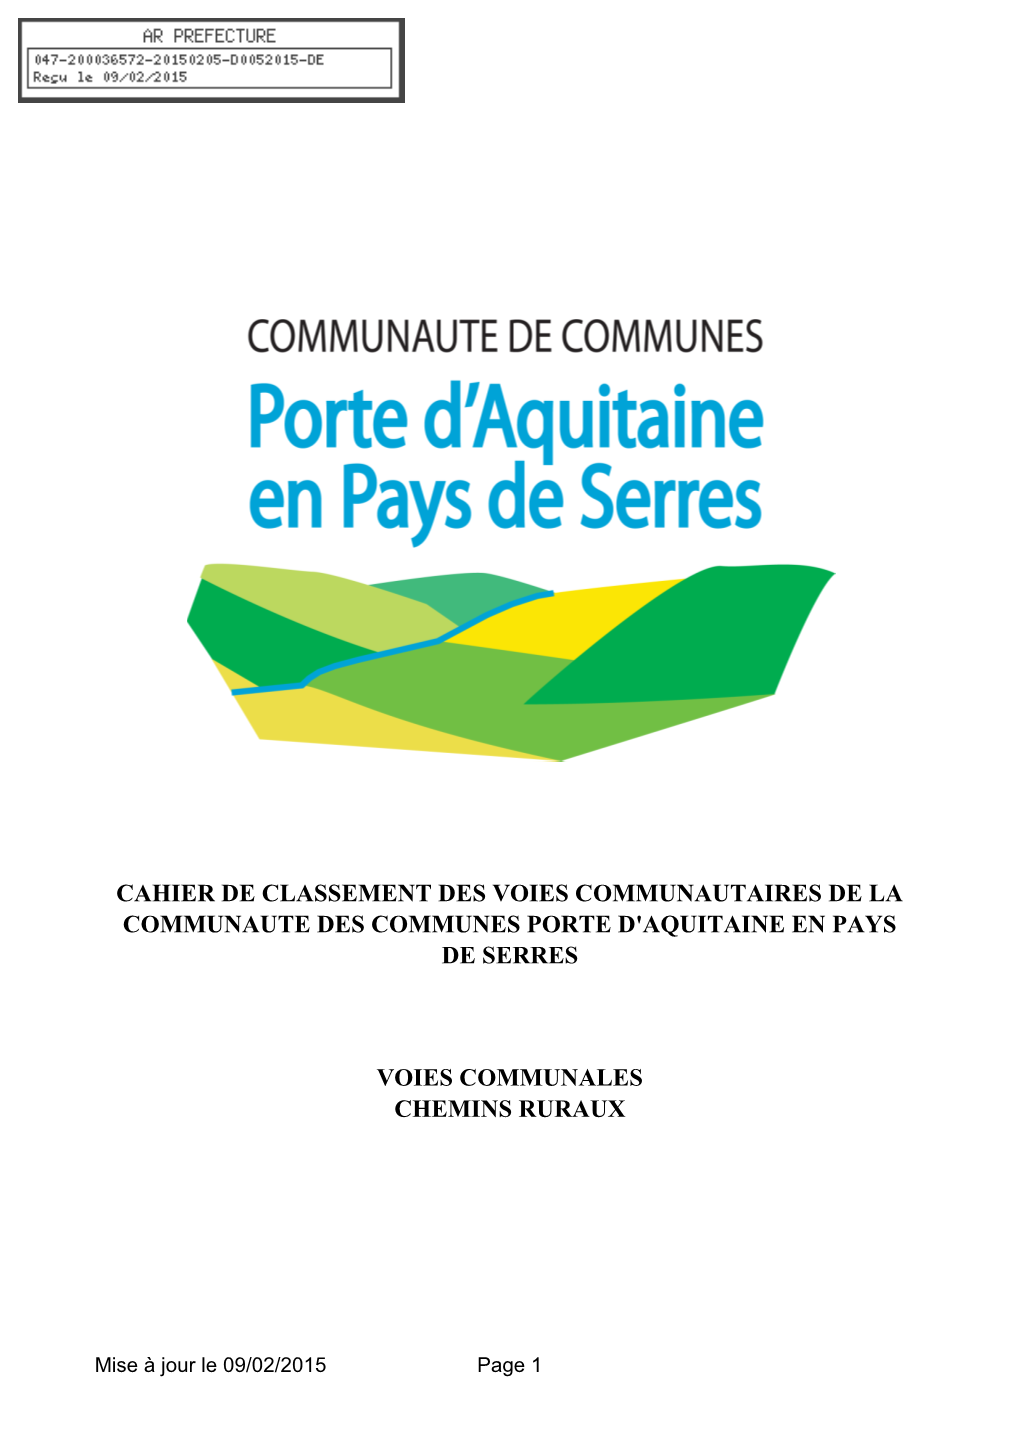 Cahier De Classement Des Voies Communautaires De La Communaute Des Communes Porte D'aquitaine En Pays De Serres